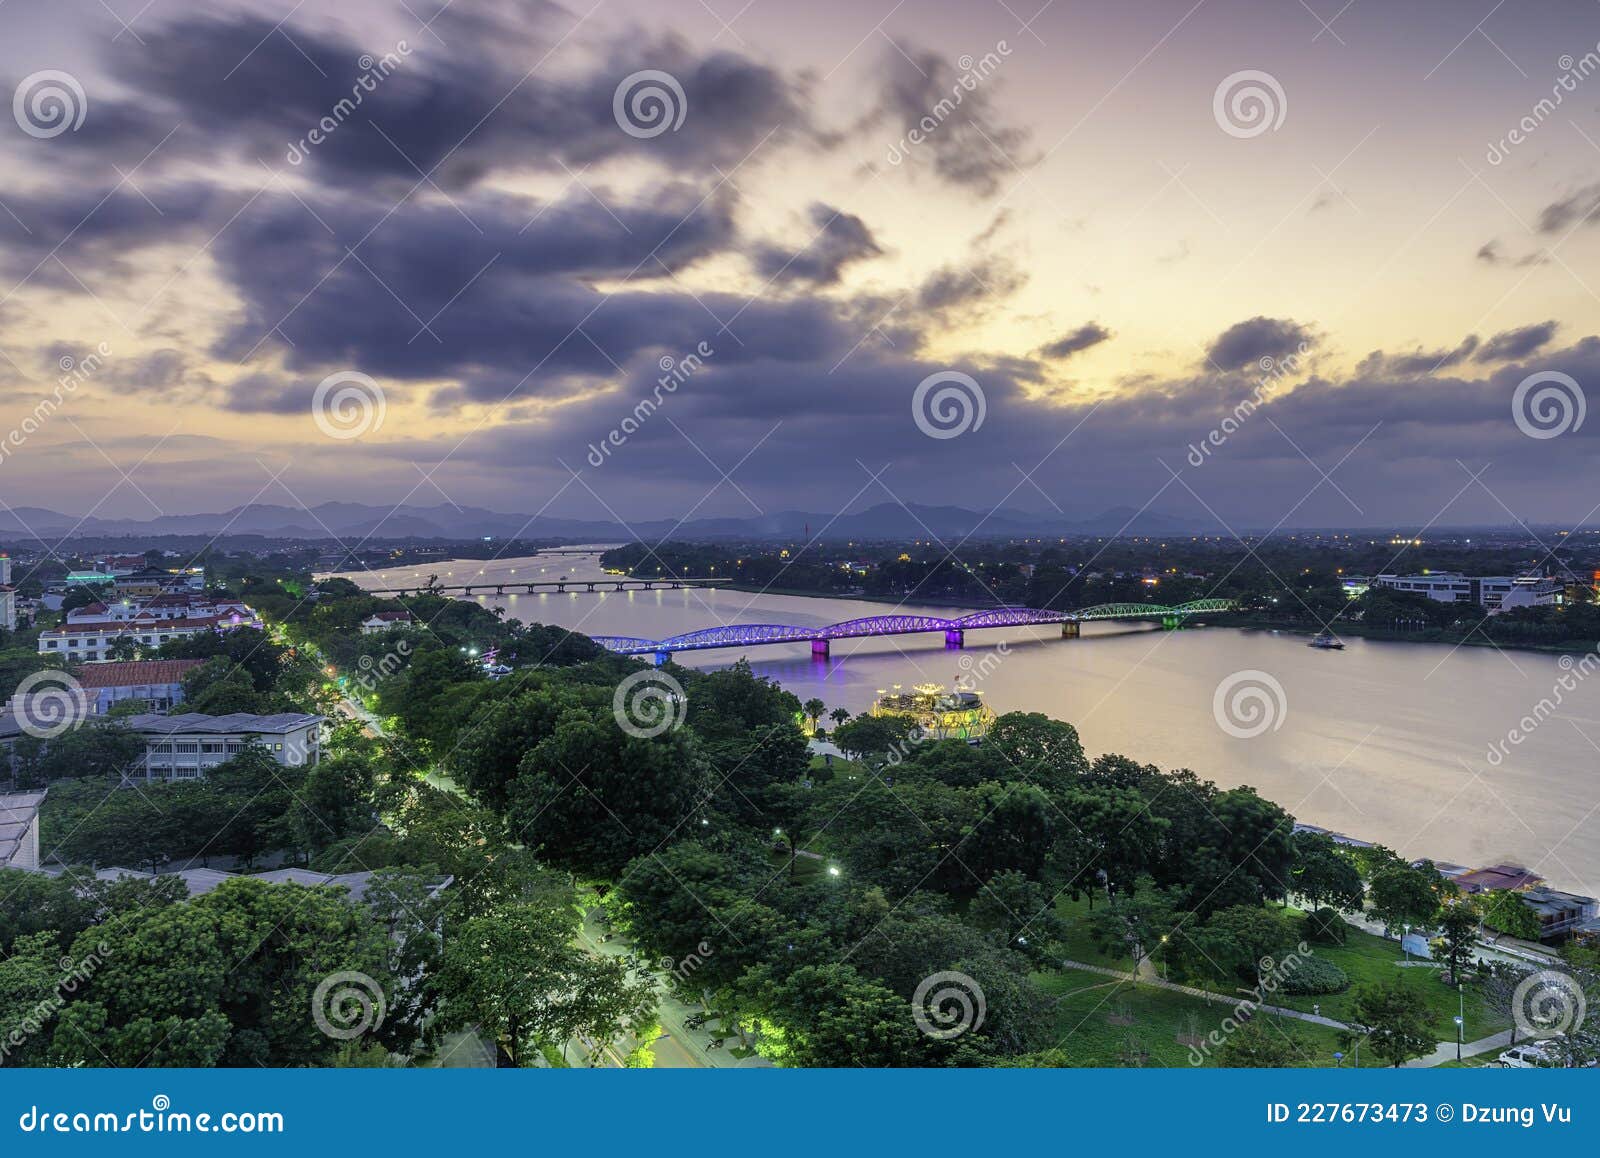 Ponte De Trena Em Hue Vietnam Imagem de Stock - Imagem de parque